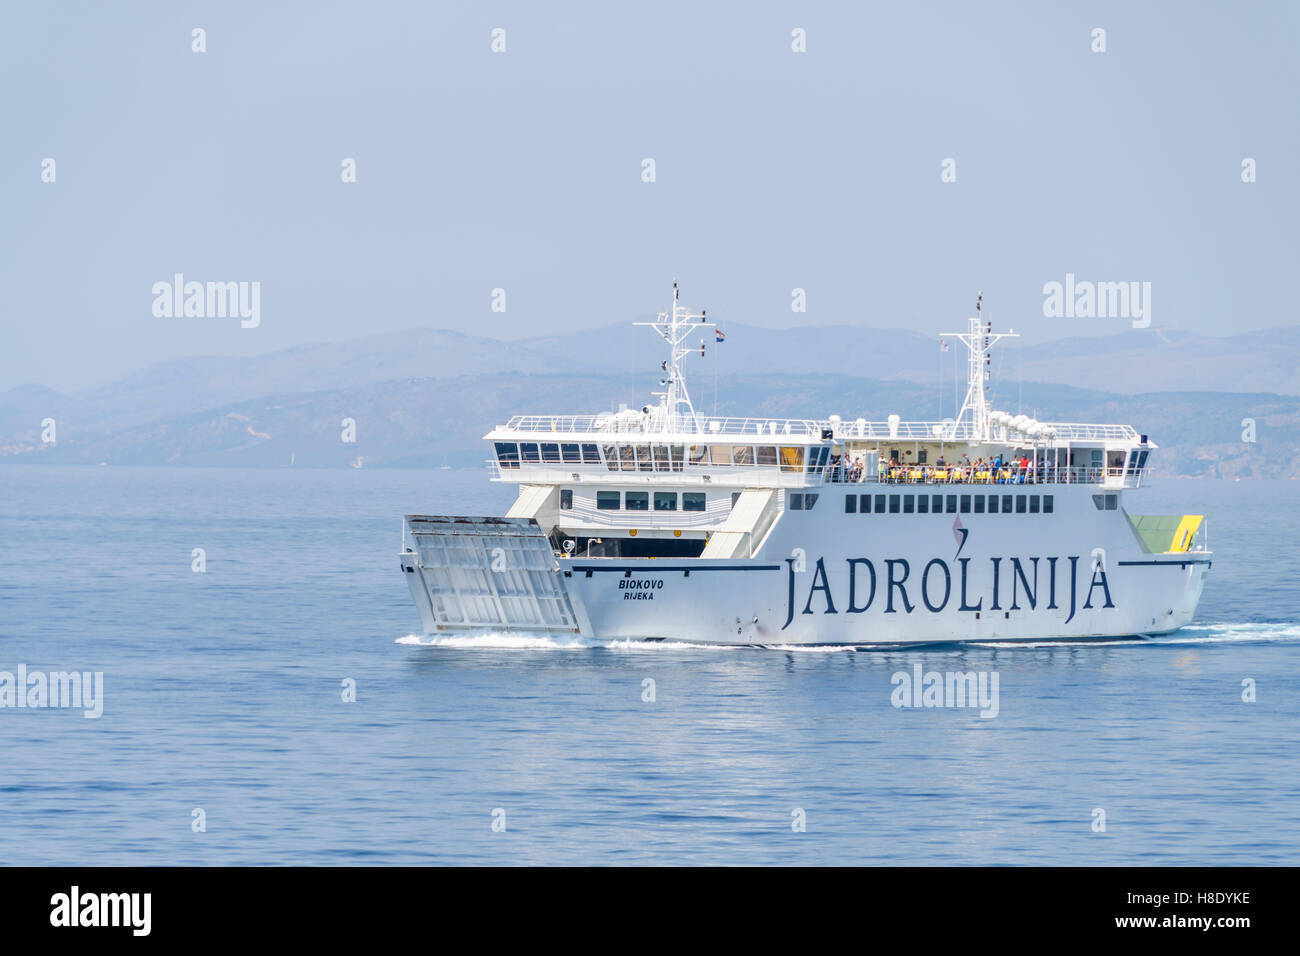 Split, Croazia - Luglio 27, 2016: nave traghetto Biokovo sulla rotta regolari tra Spalato e Brac. Ferry boat azionato da Jadrolinija. Foto Stock